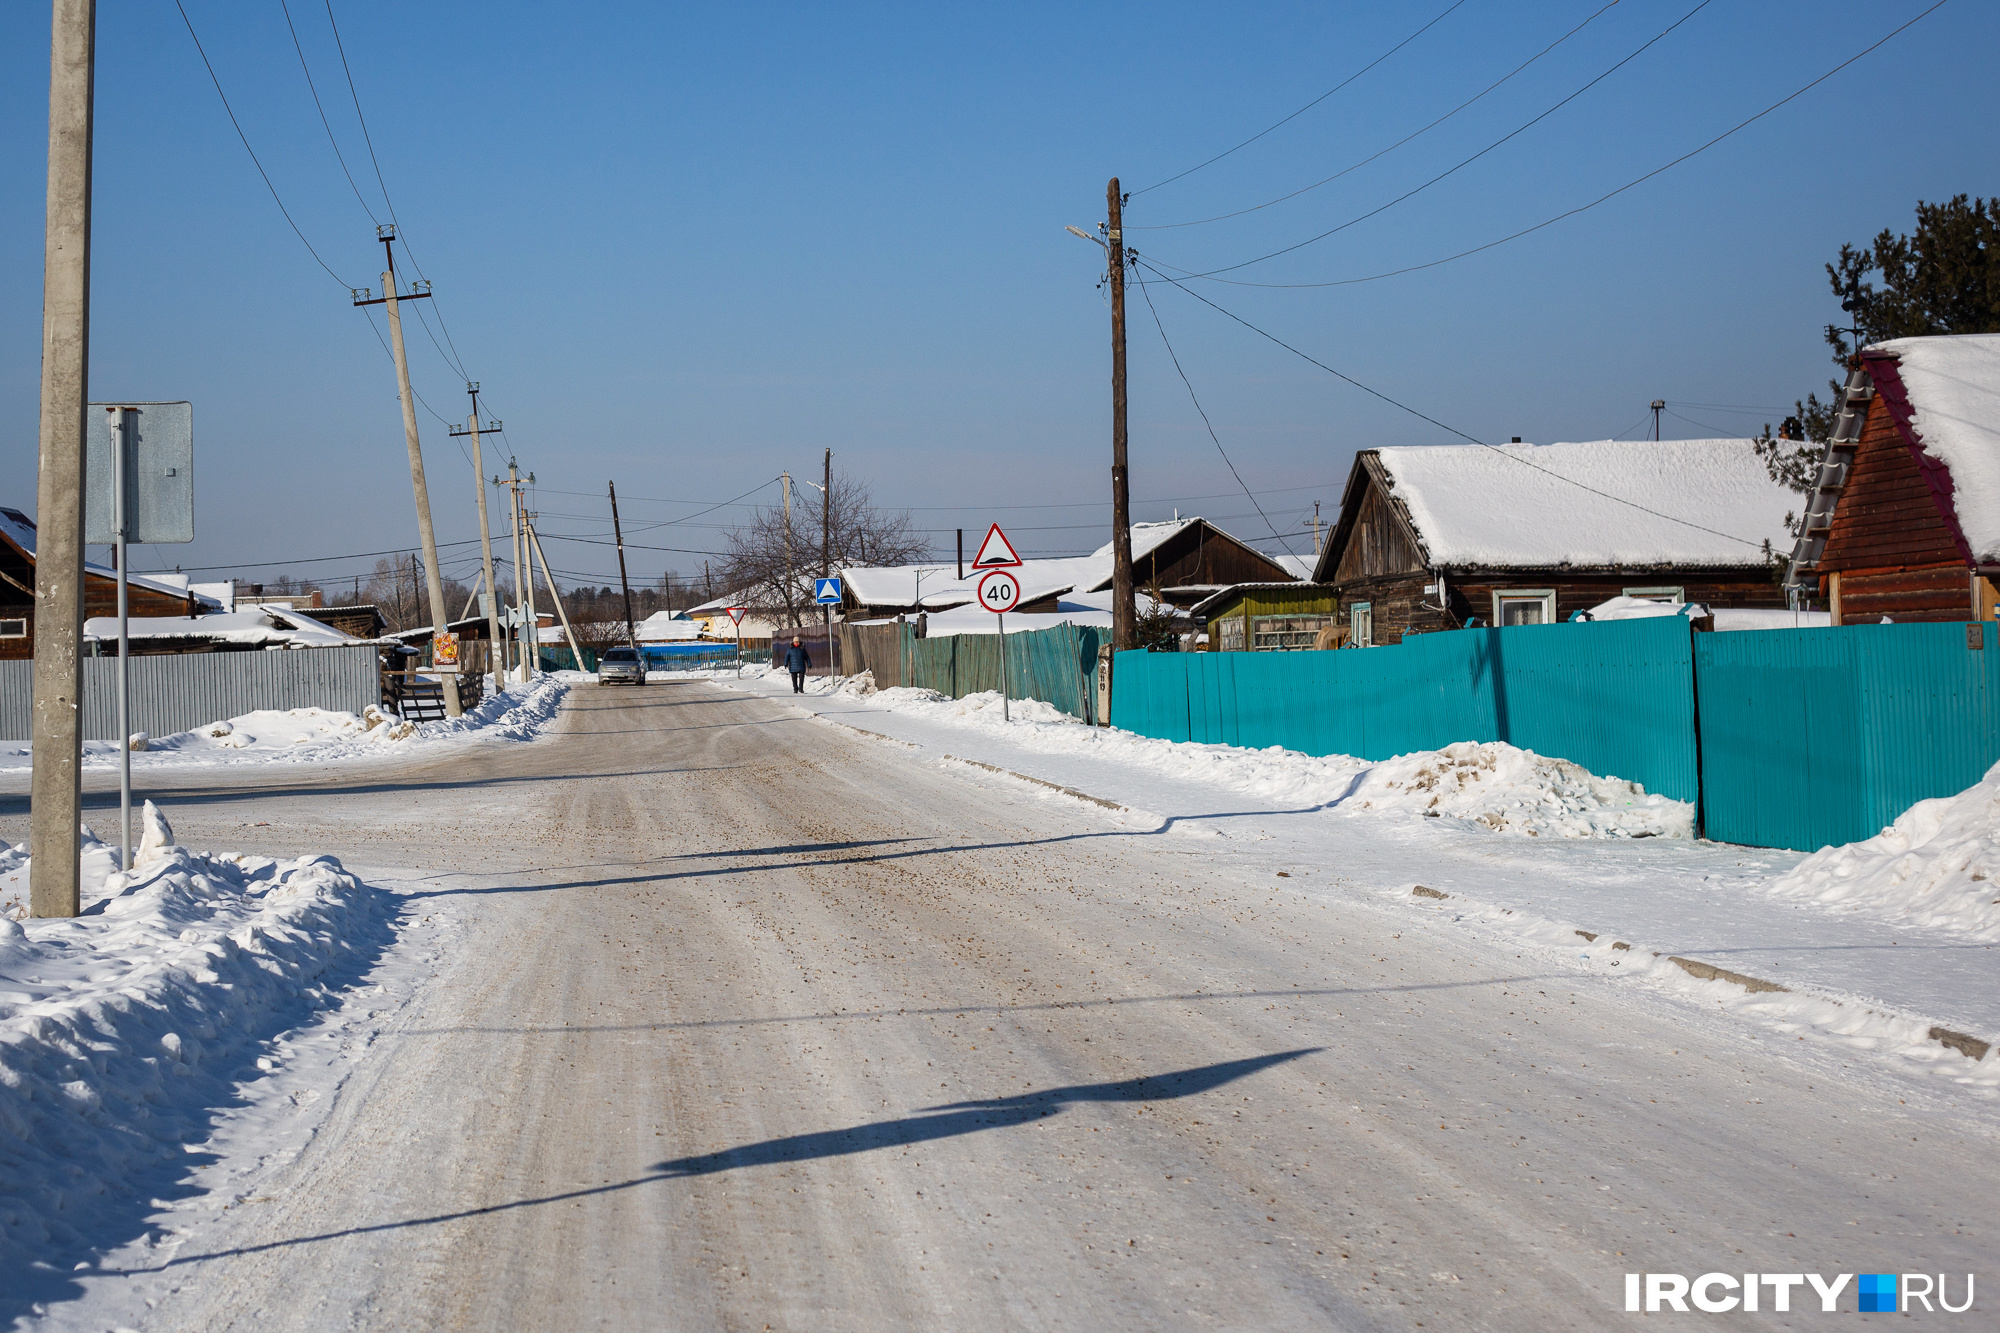 Русские приезжали в Одинск, чтобы обменивать у местных меха, мясо и молоко